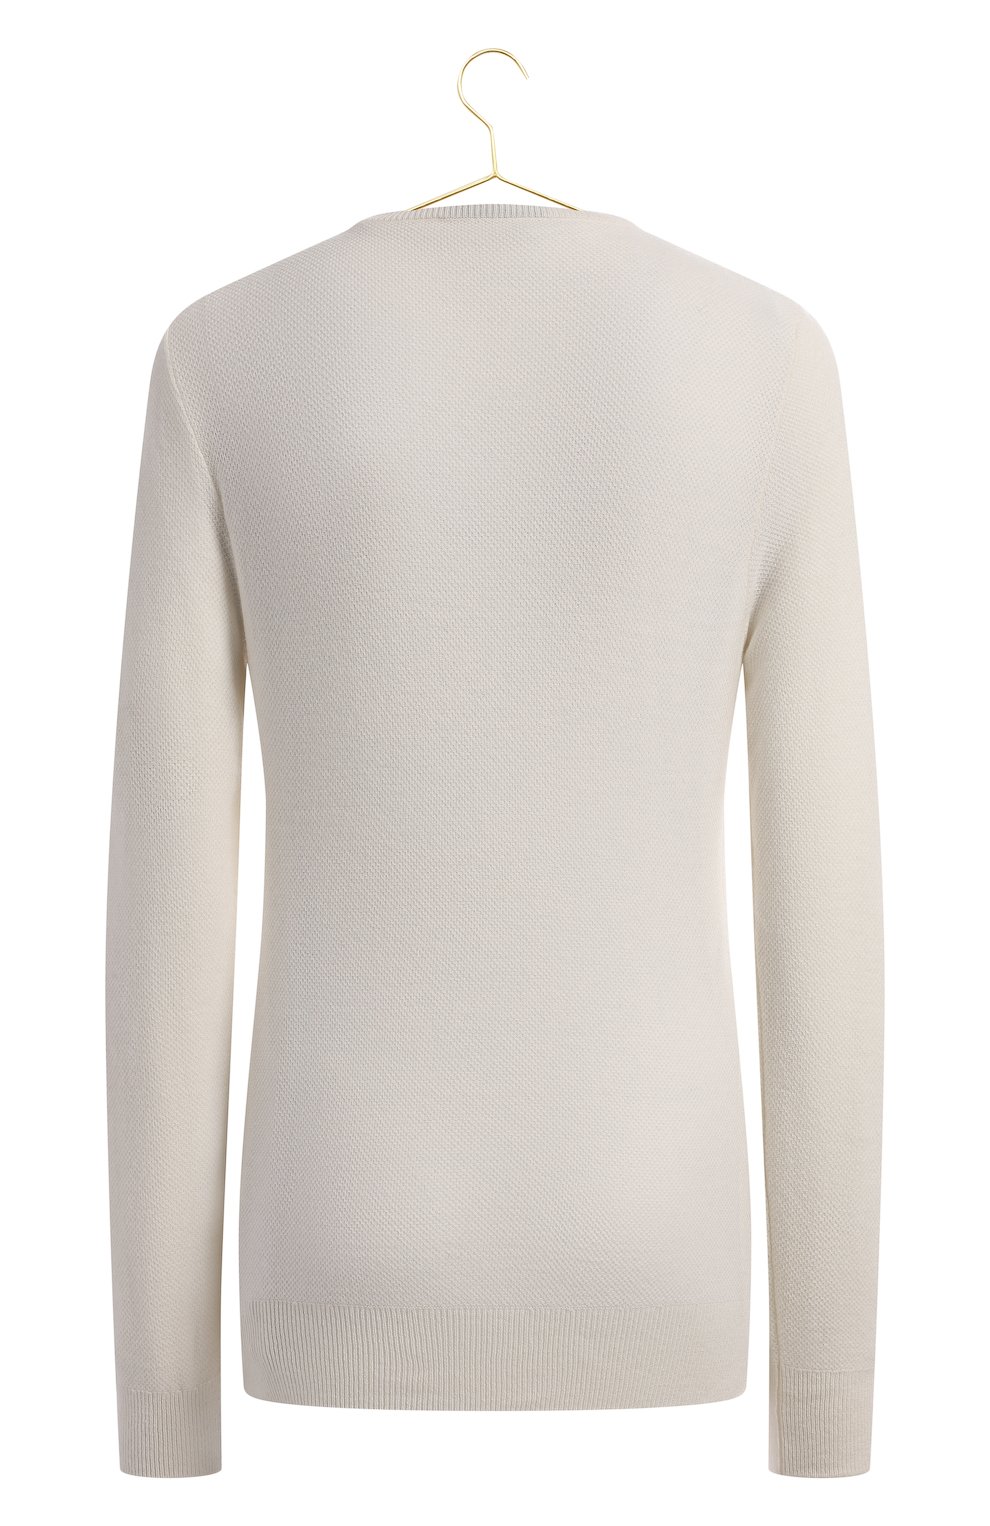 Кашемировый пуловер | Loro Piana | Белый - 2